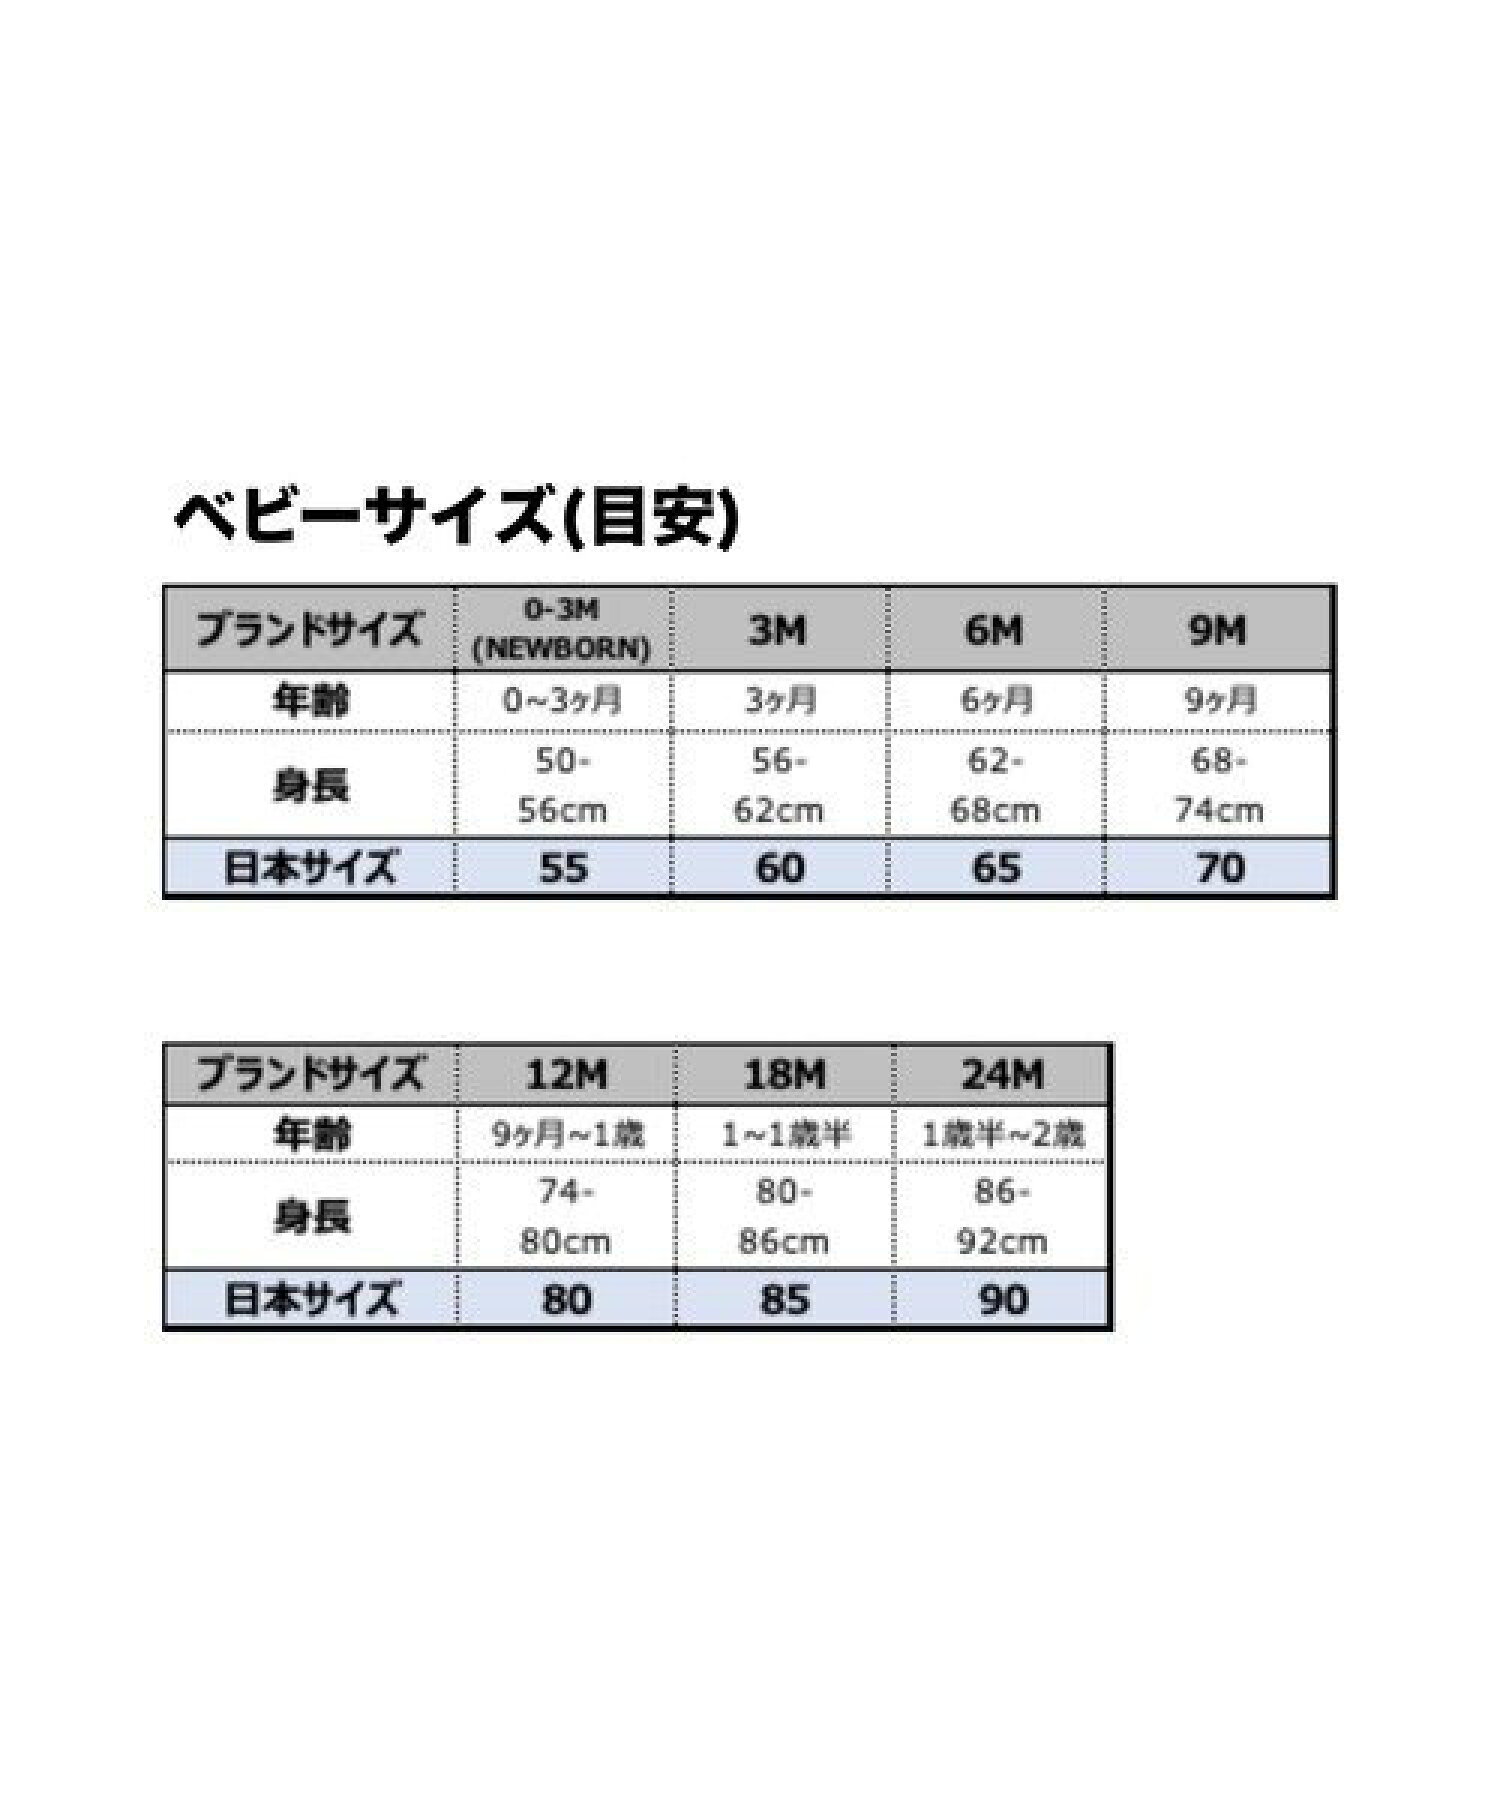 ベビー(50-74cm) ロンパース NIKE(ナイキ) FUTURA ROMPER